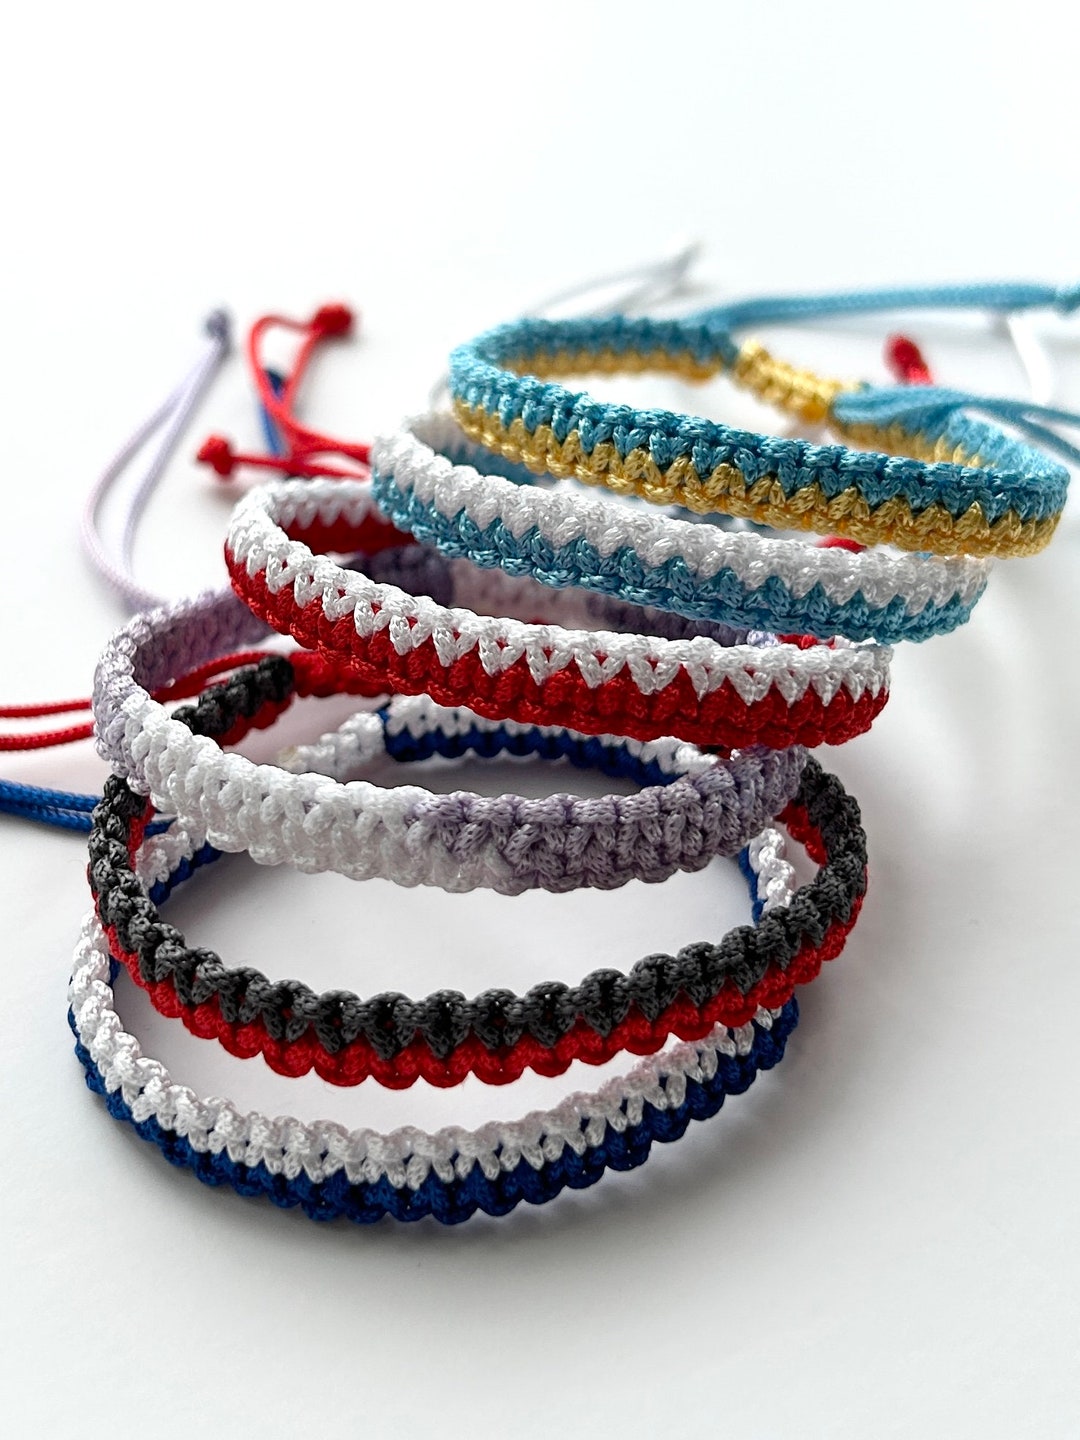 Fablinks 12 Adjustable Rope Bracelets for Women and Men, Round Boho Woven  String Friendship Bracelets